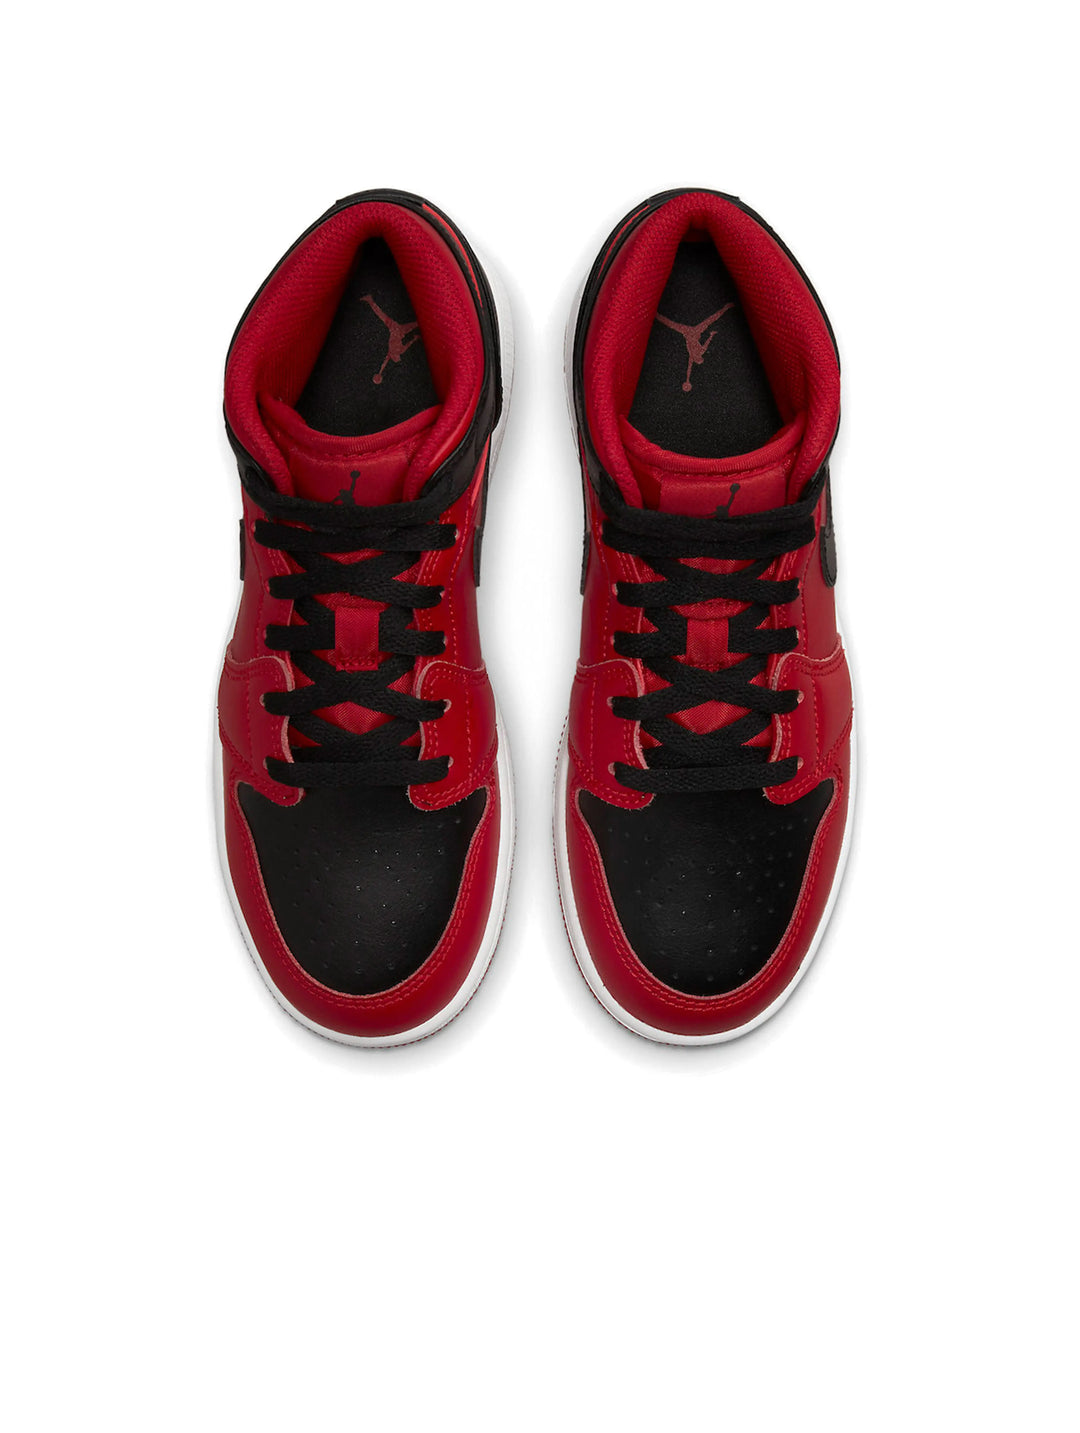 Nike Air Jordan 1 Mid Reverse Bred [2021] (GS) Prior